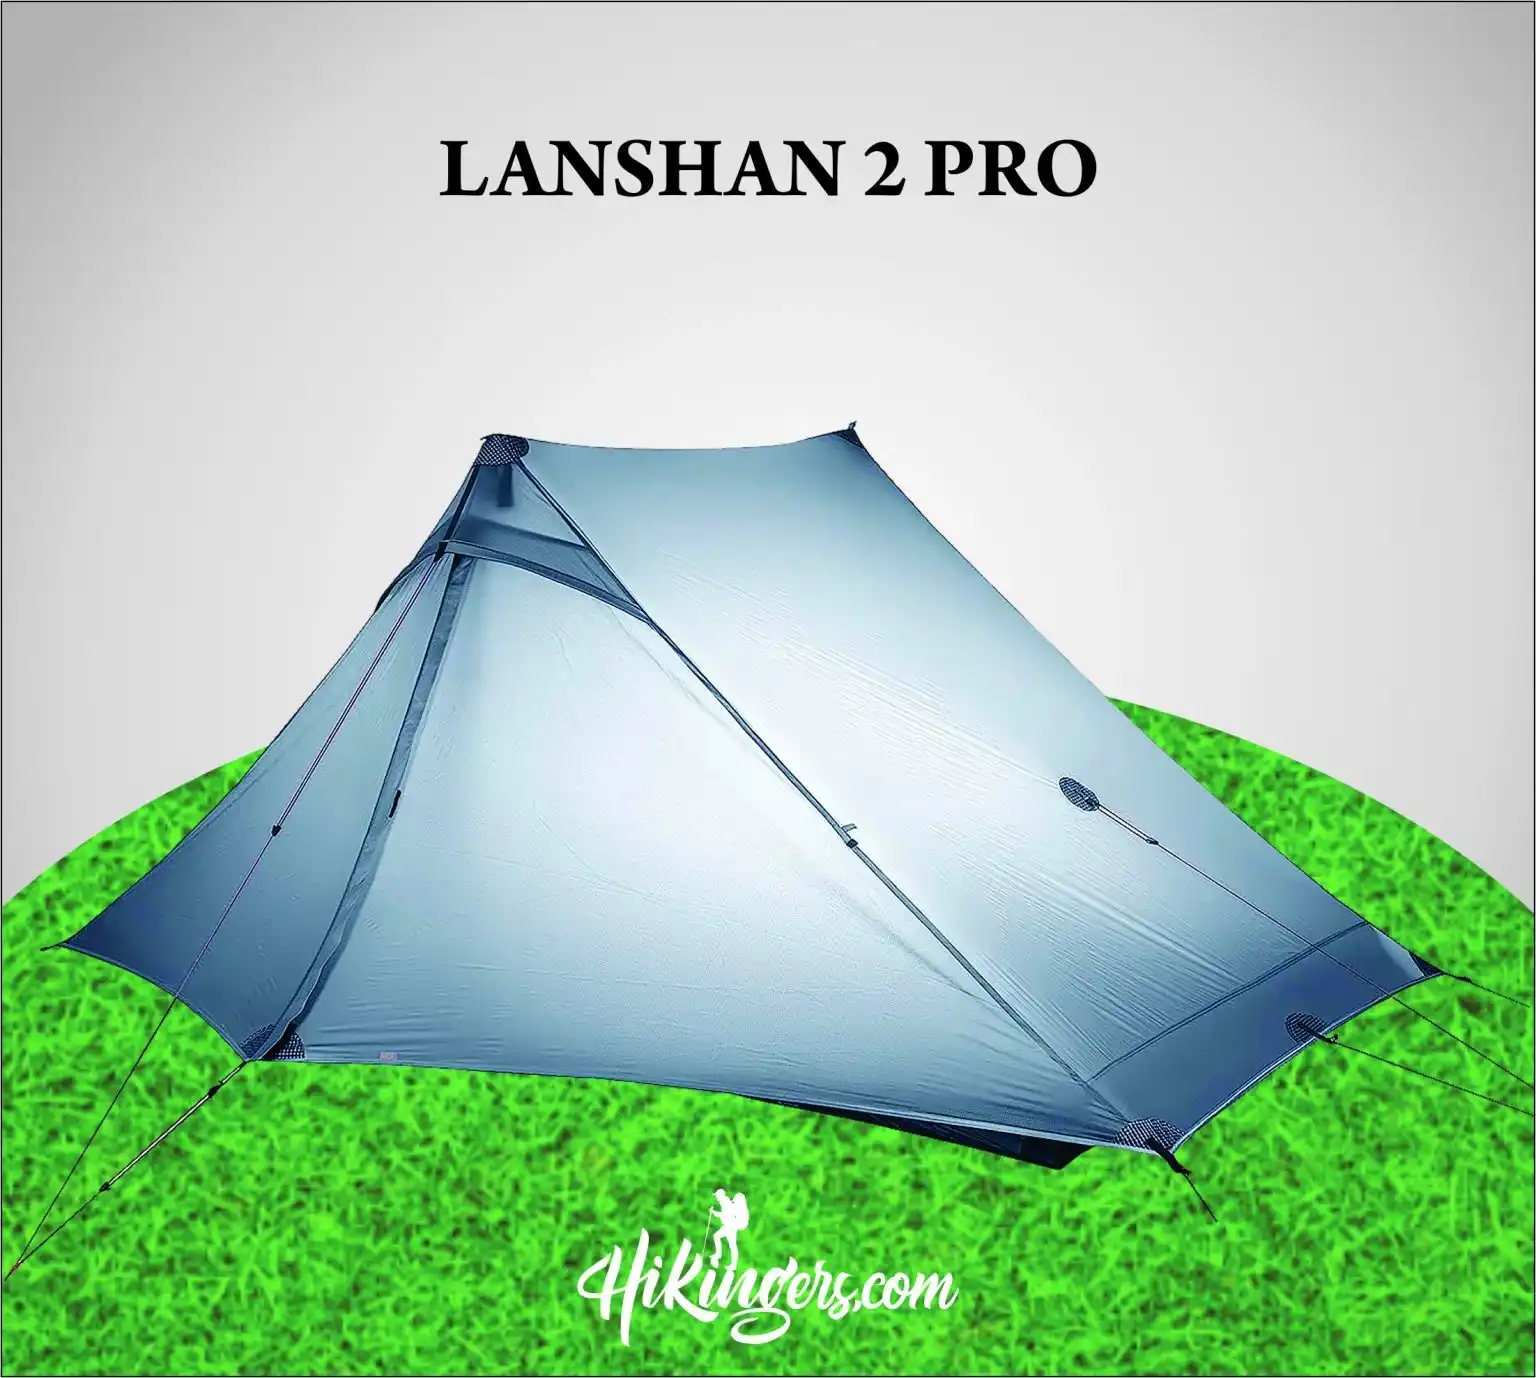 Lanshan 2 Pro